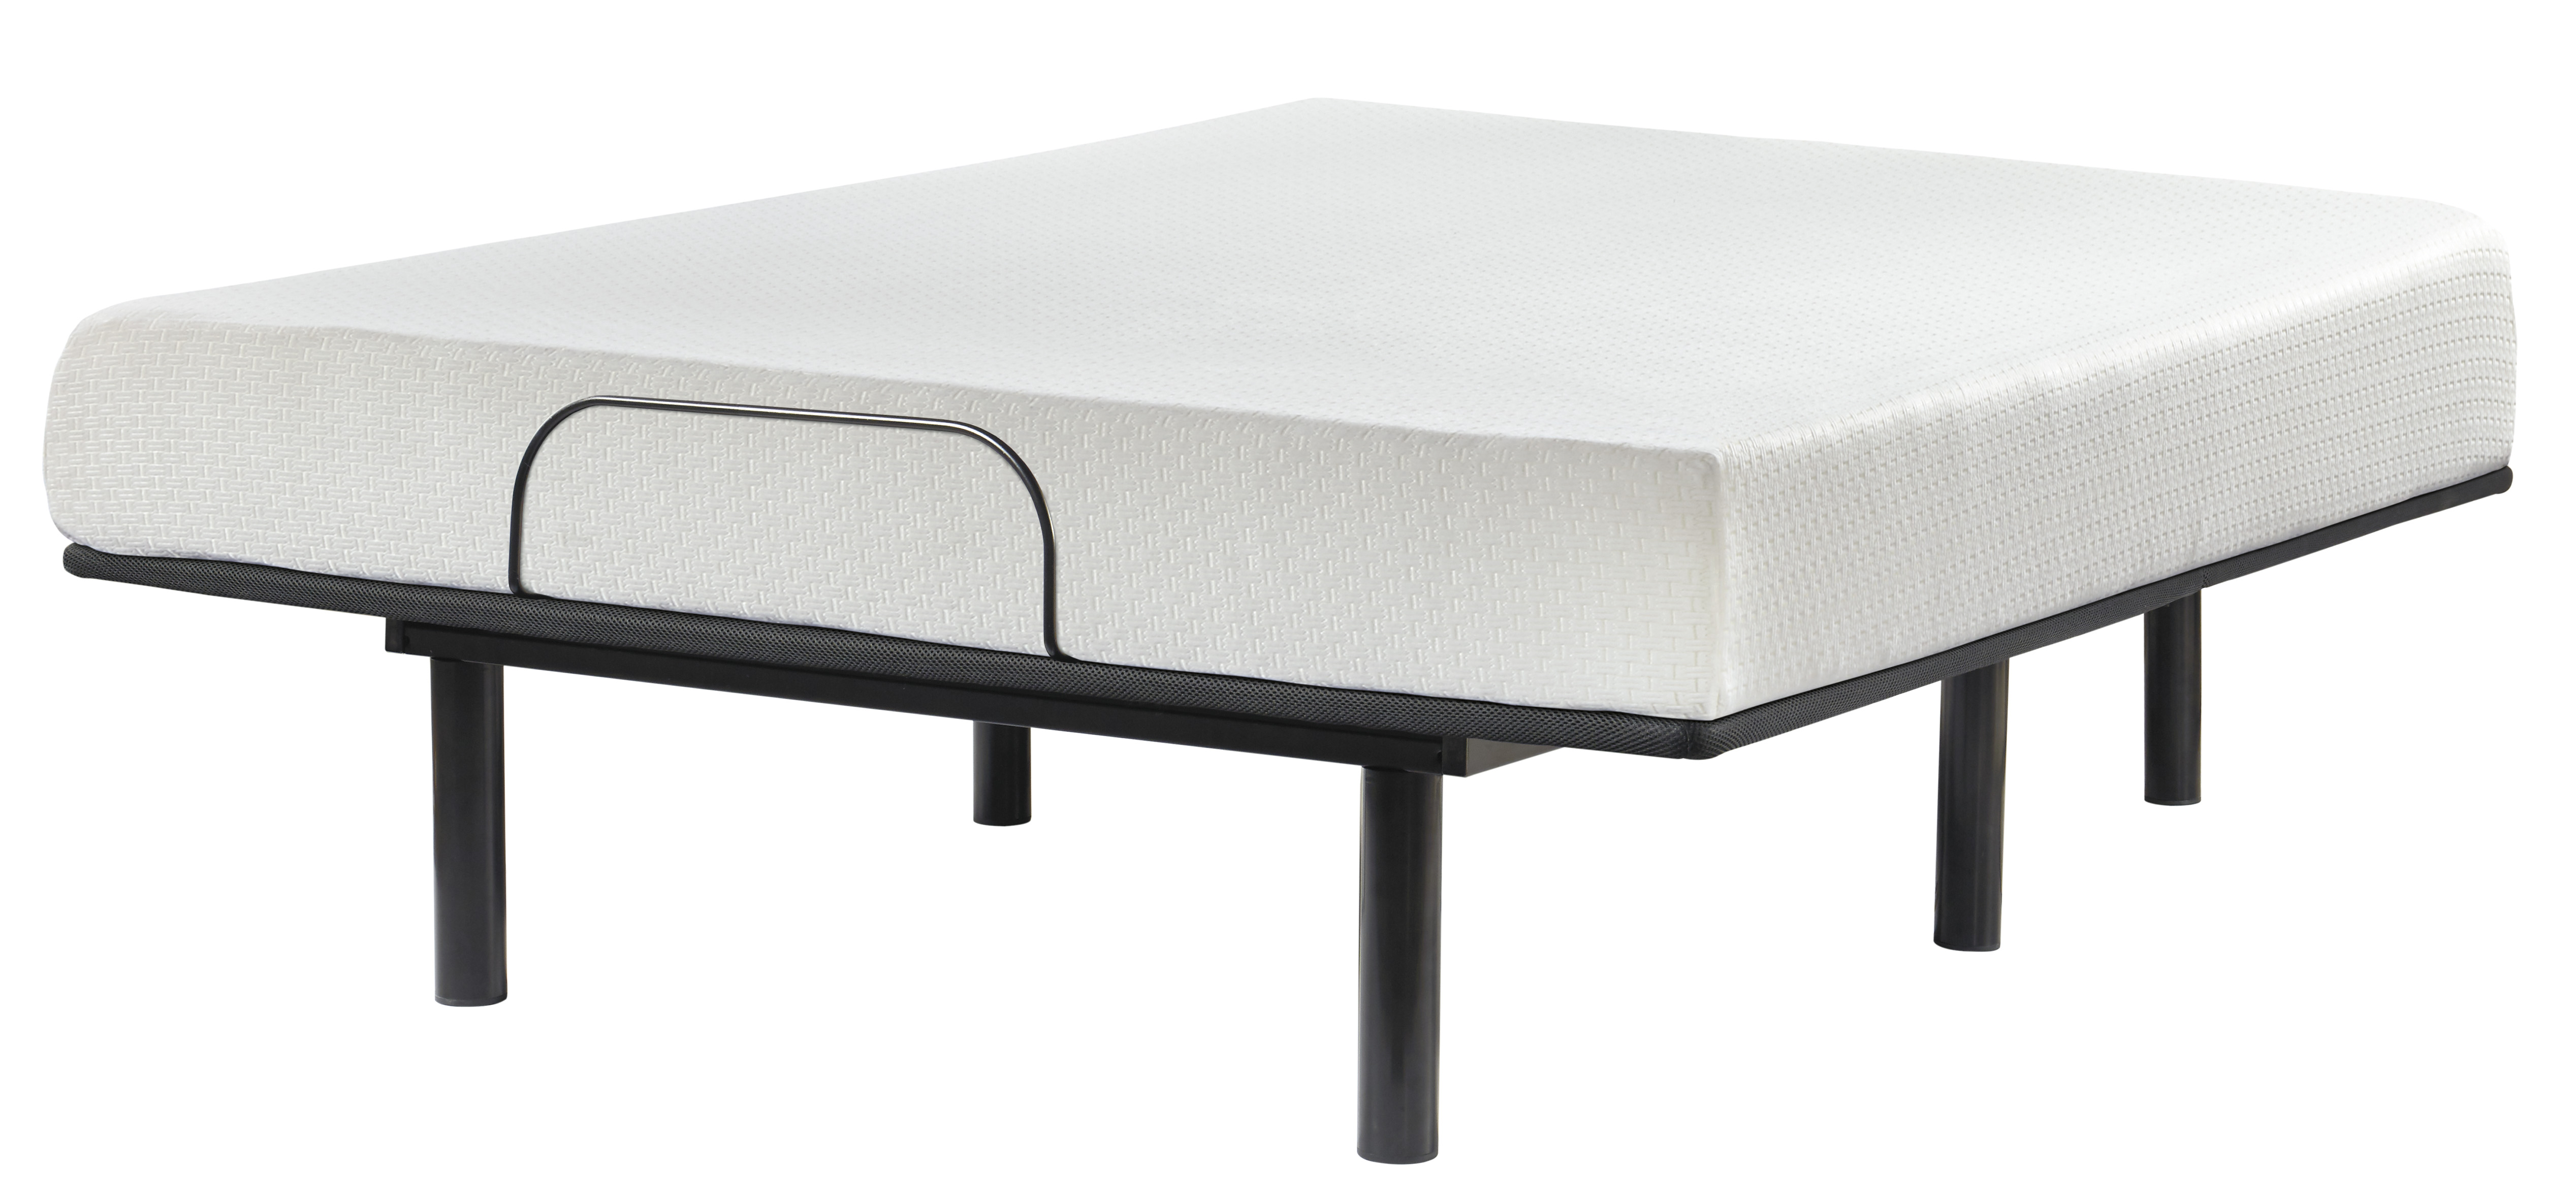 8 inch foam mattress cover